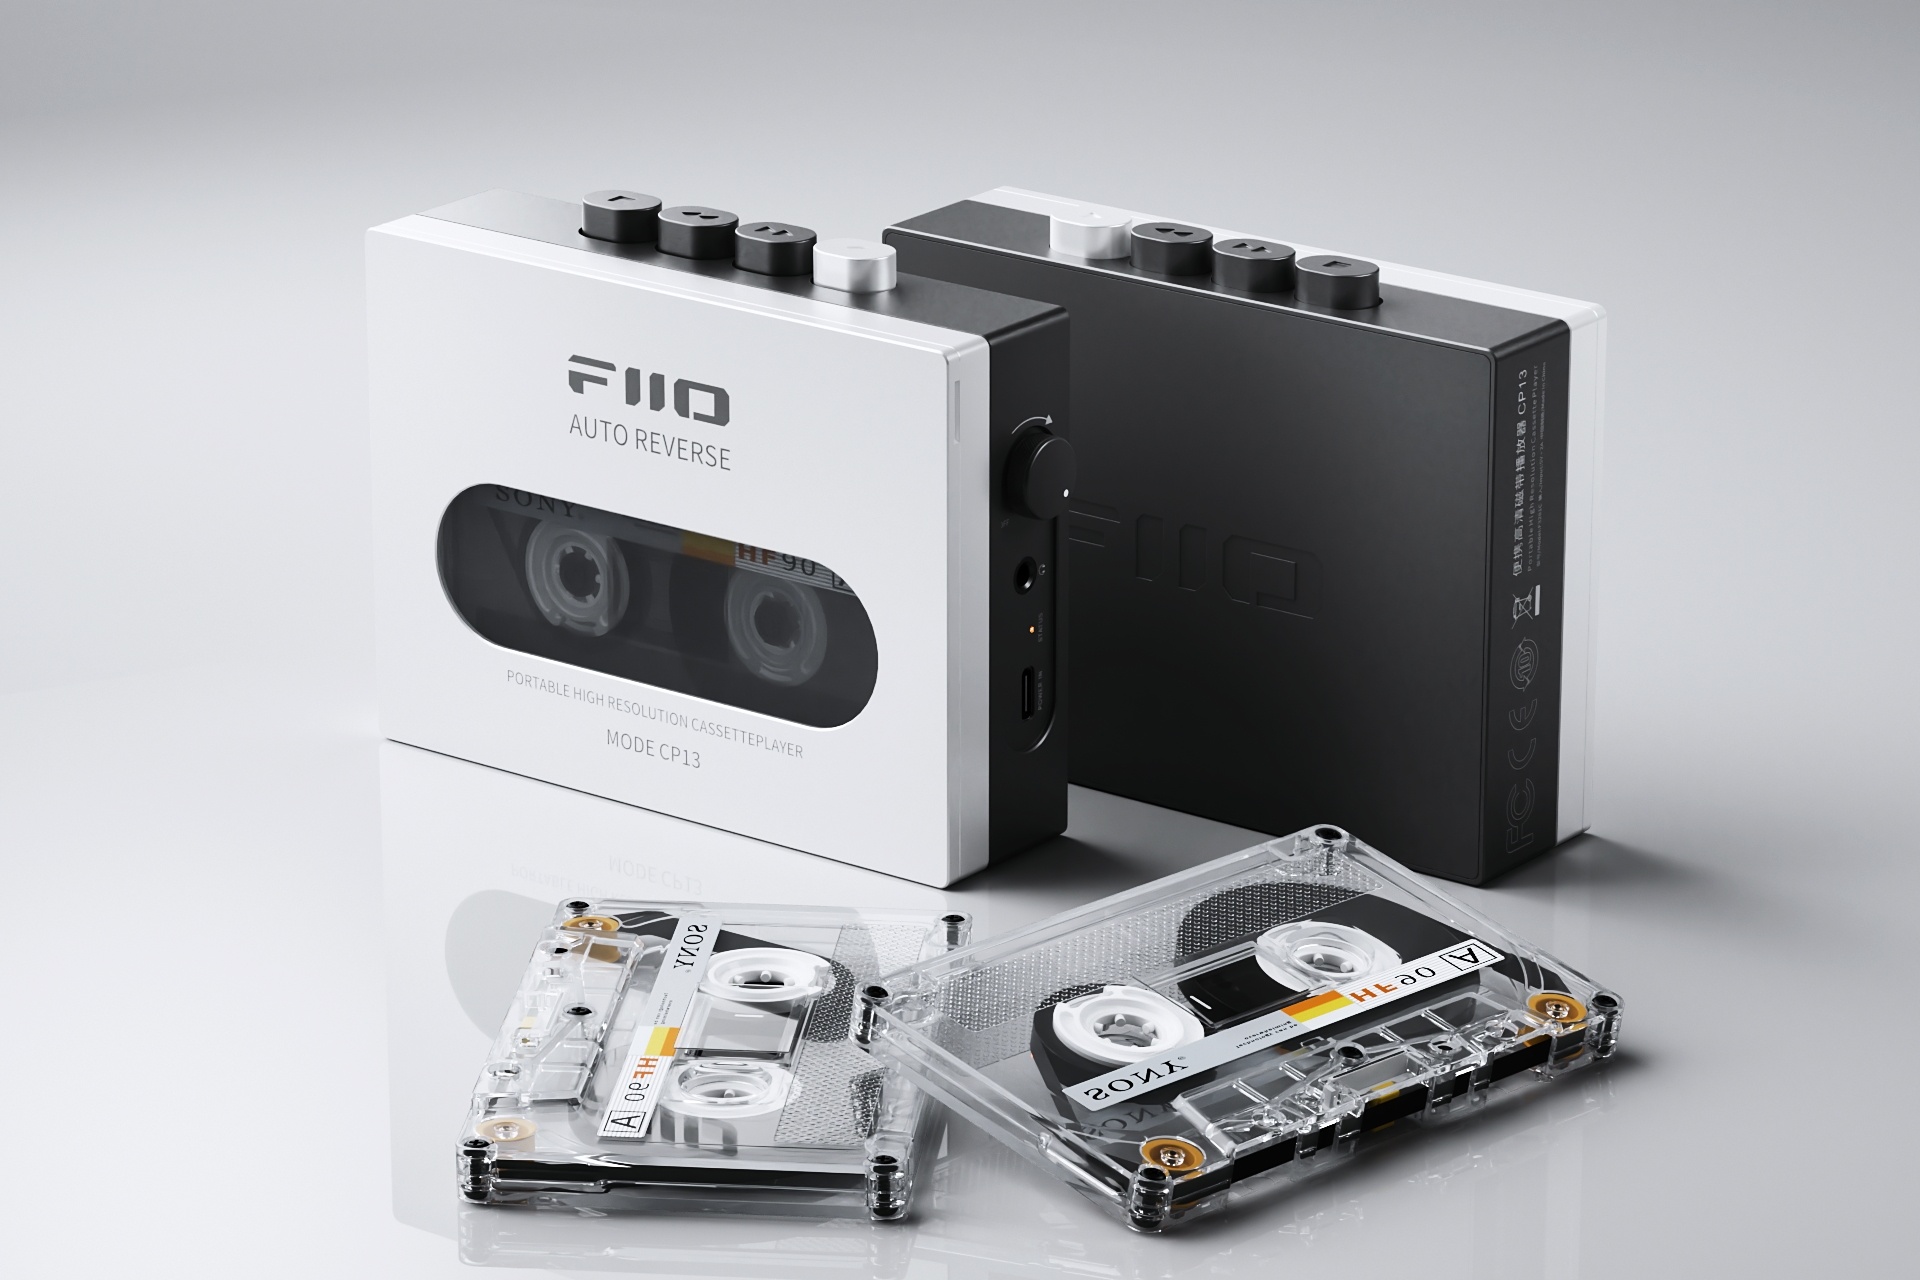 FiiO thông báo ra mắt máy cassette player CP13